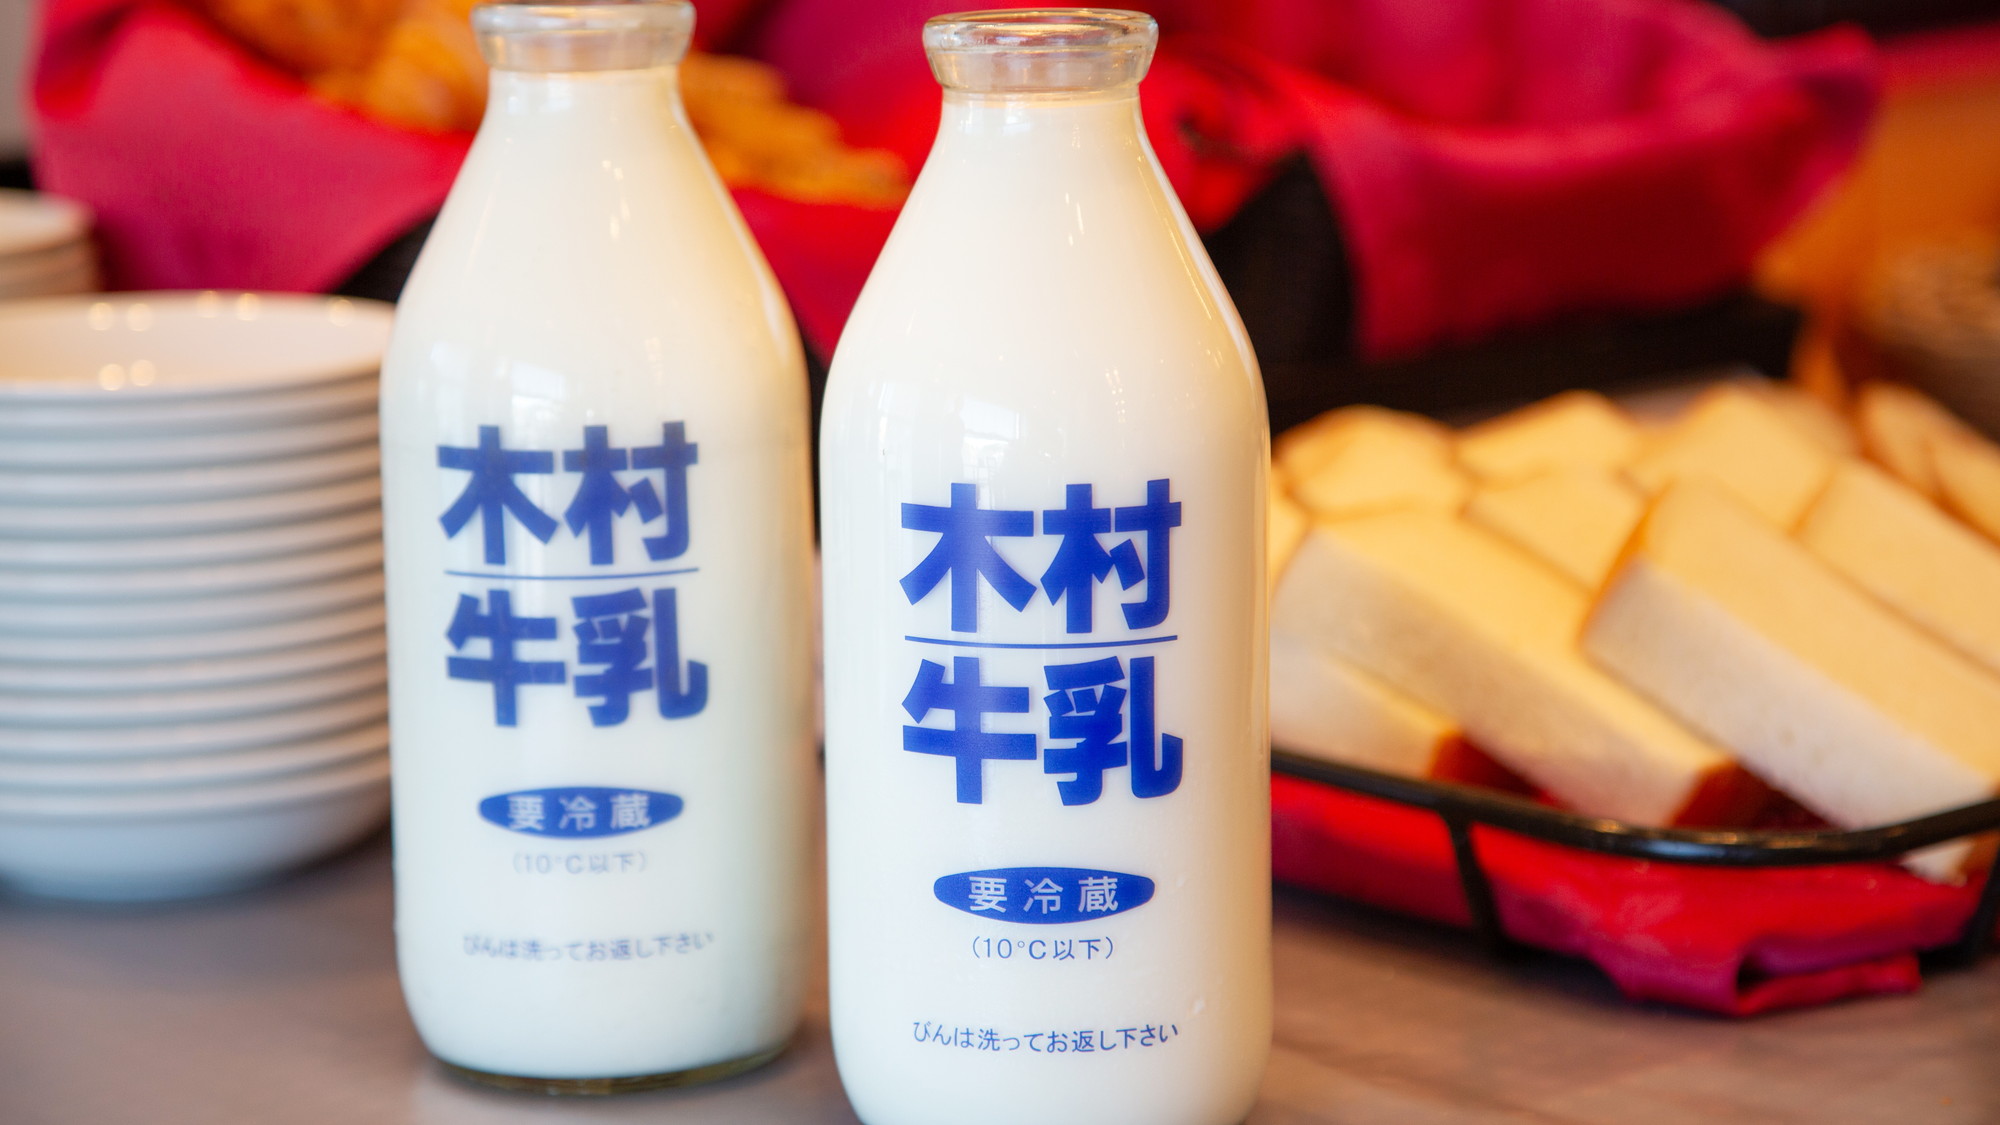 牛乳はいわきの木村牛乳を使用！地産の牛乳をお召し上がりください。